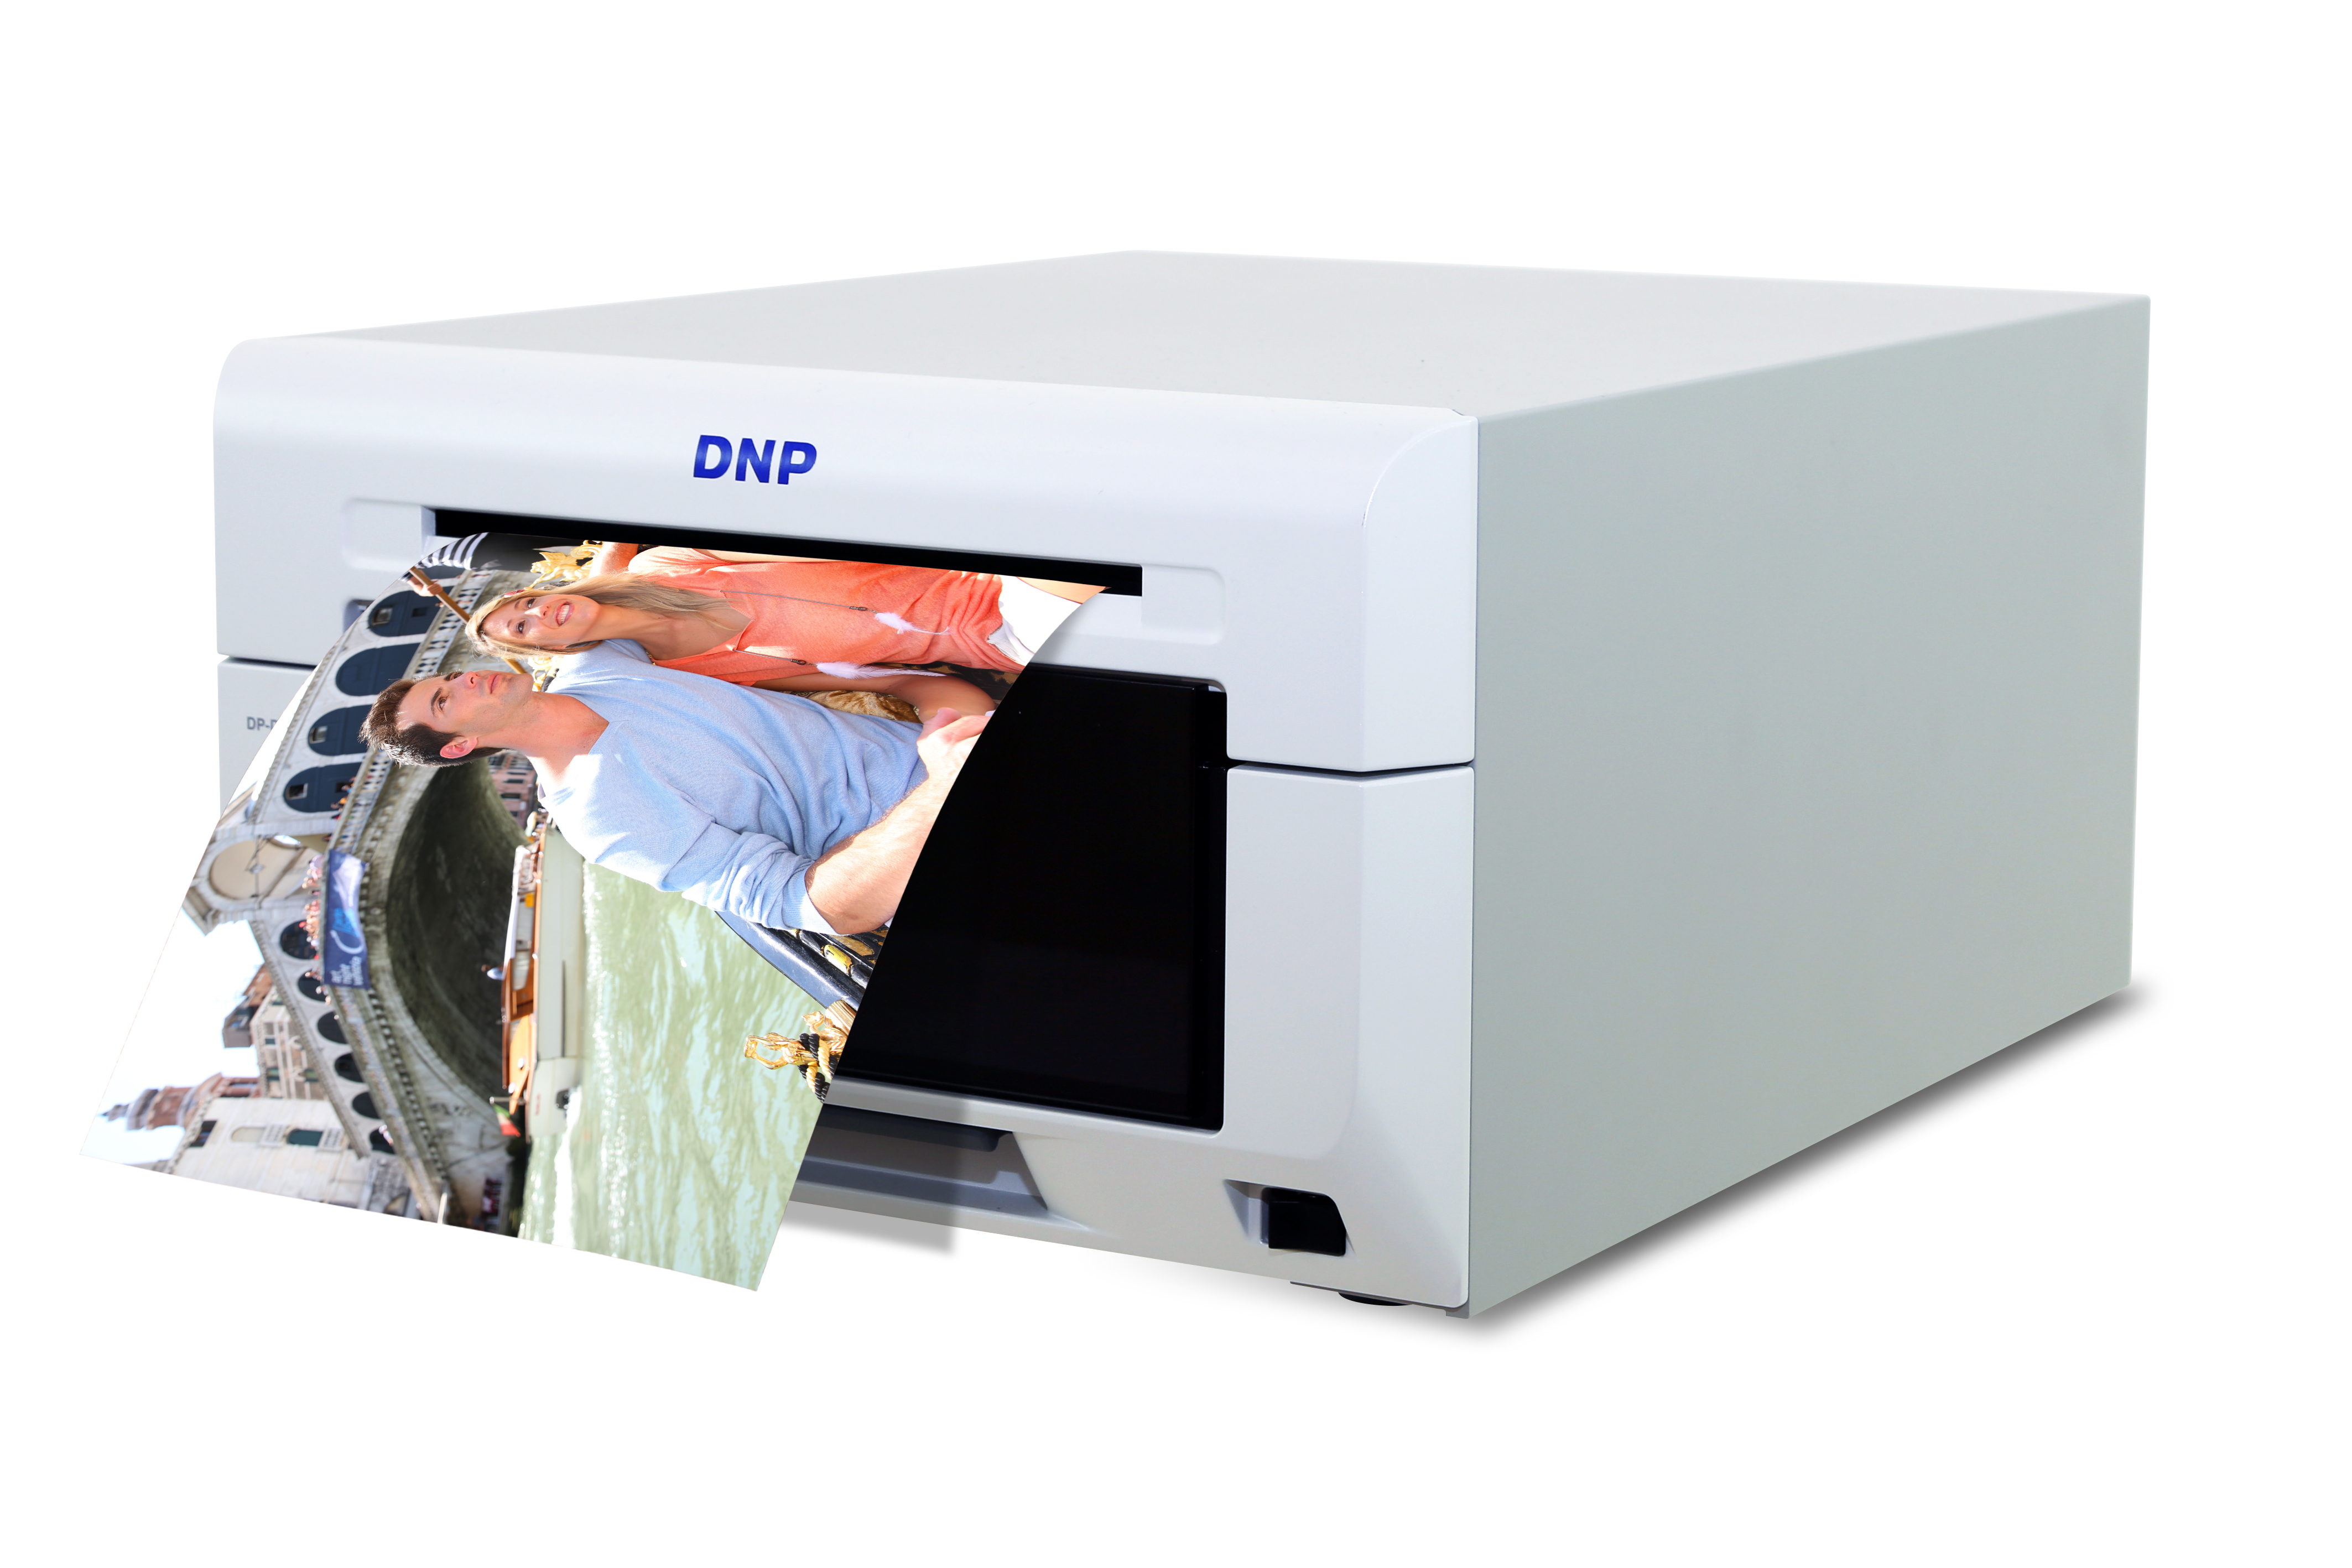 Papier consommable DNP DS 620 pour imprimante photo sublimation thermique